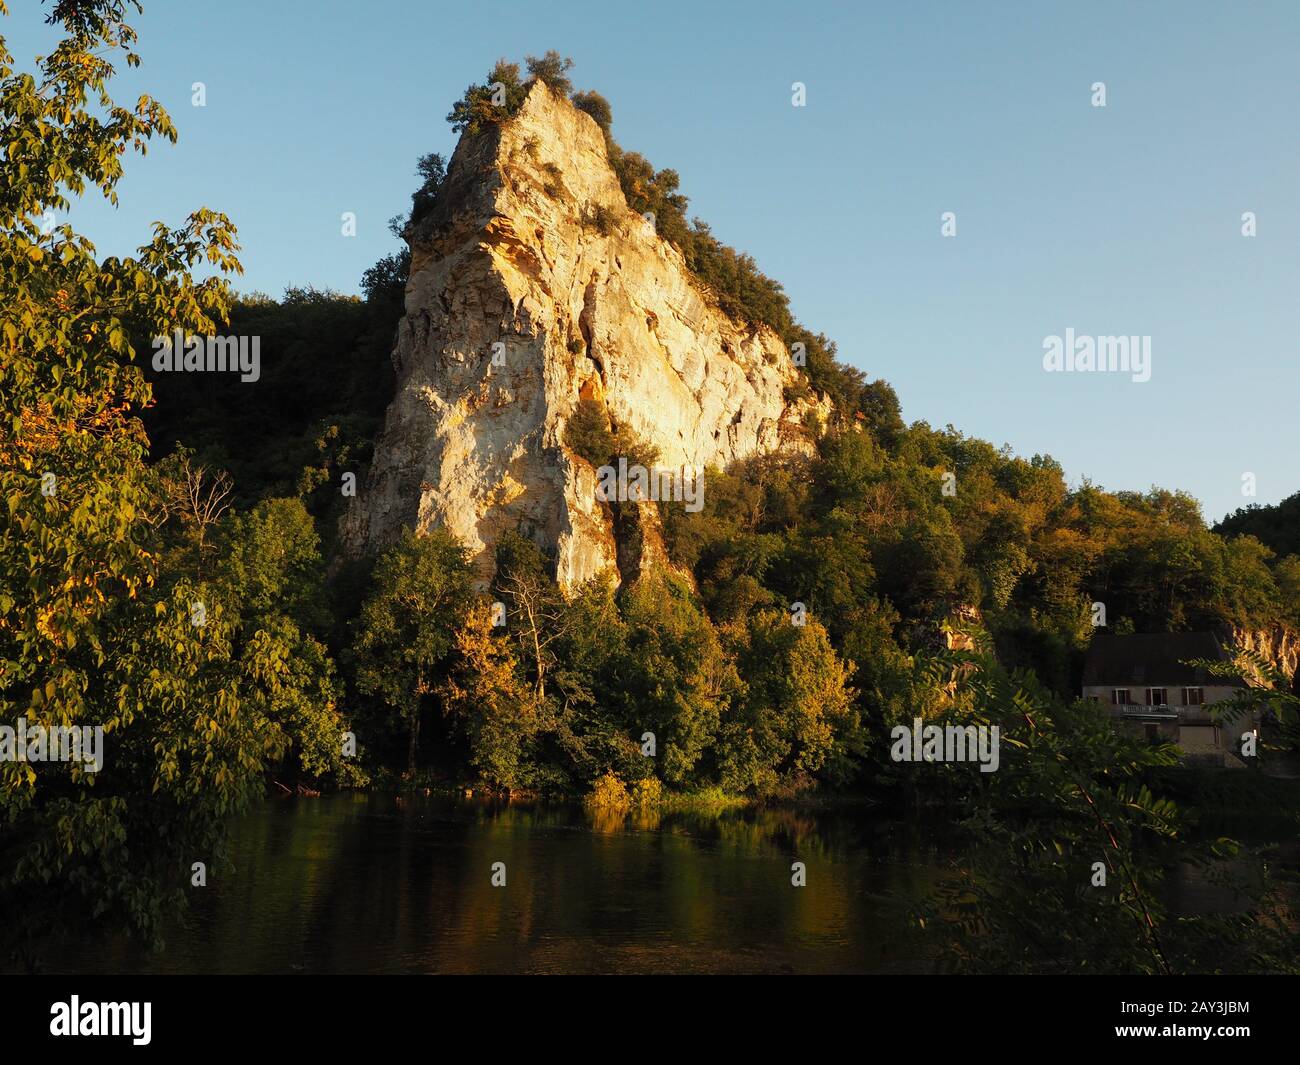 Lieux de voyage en France la Magnifique Dordogne, près de Sarlat-la-Canéda, France Banque D'Images